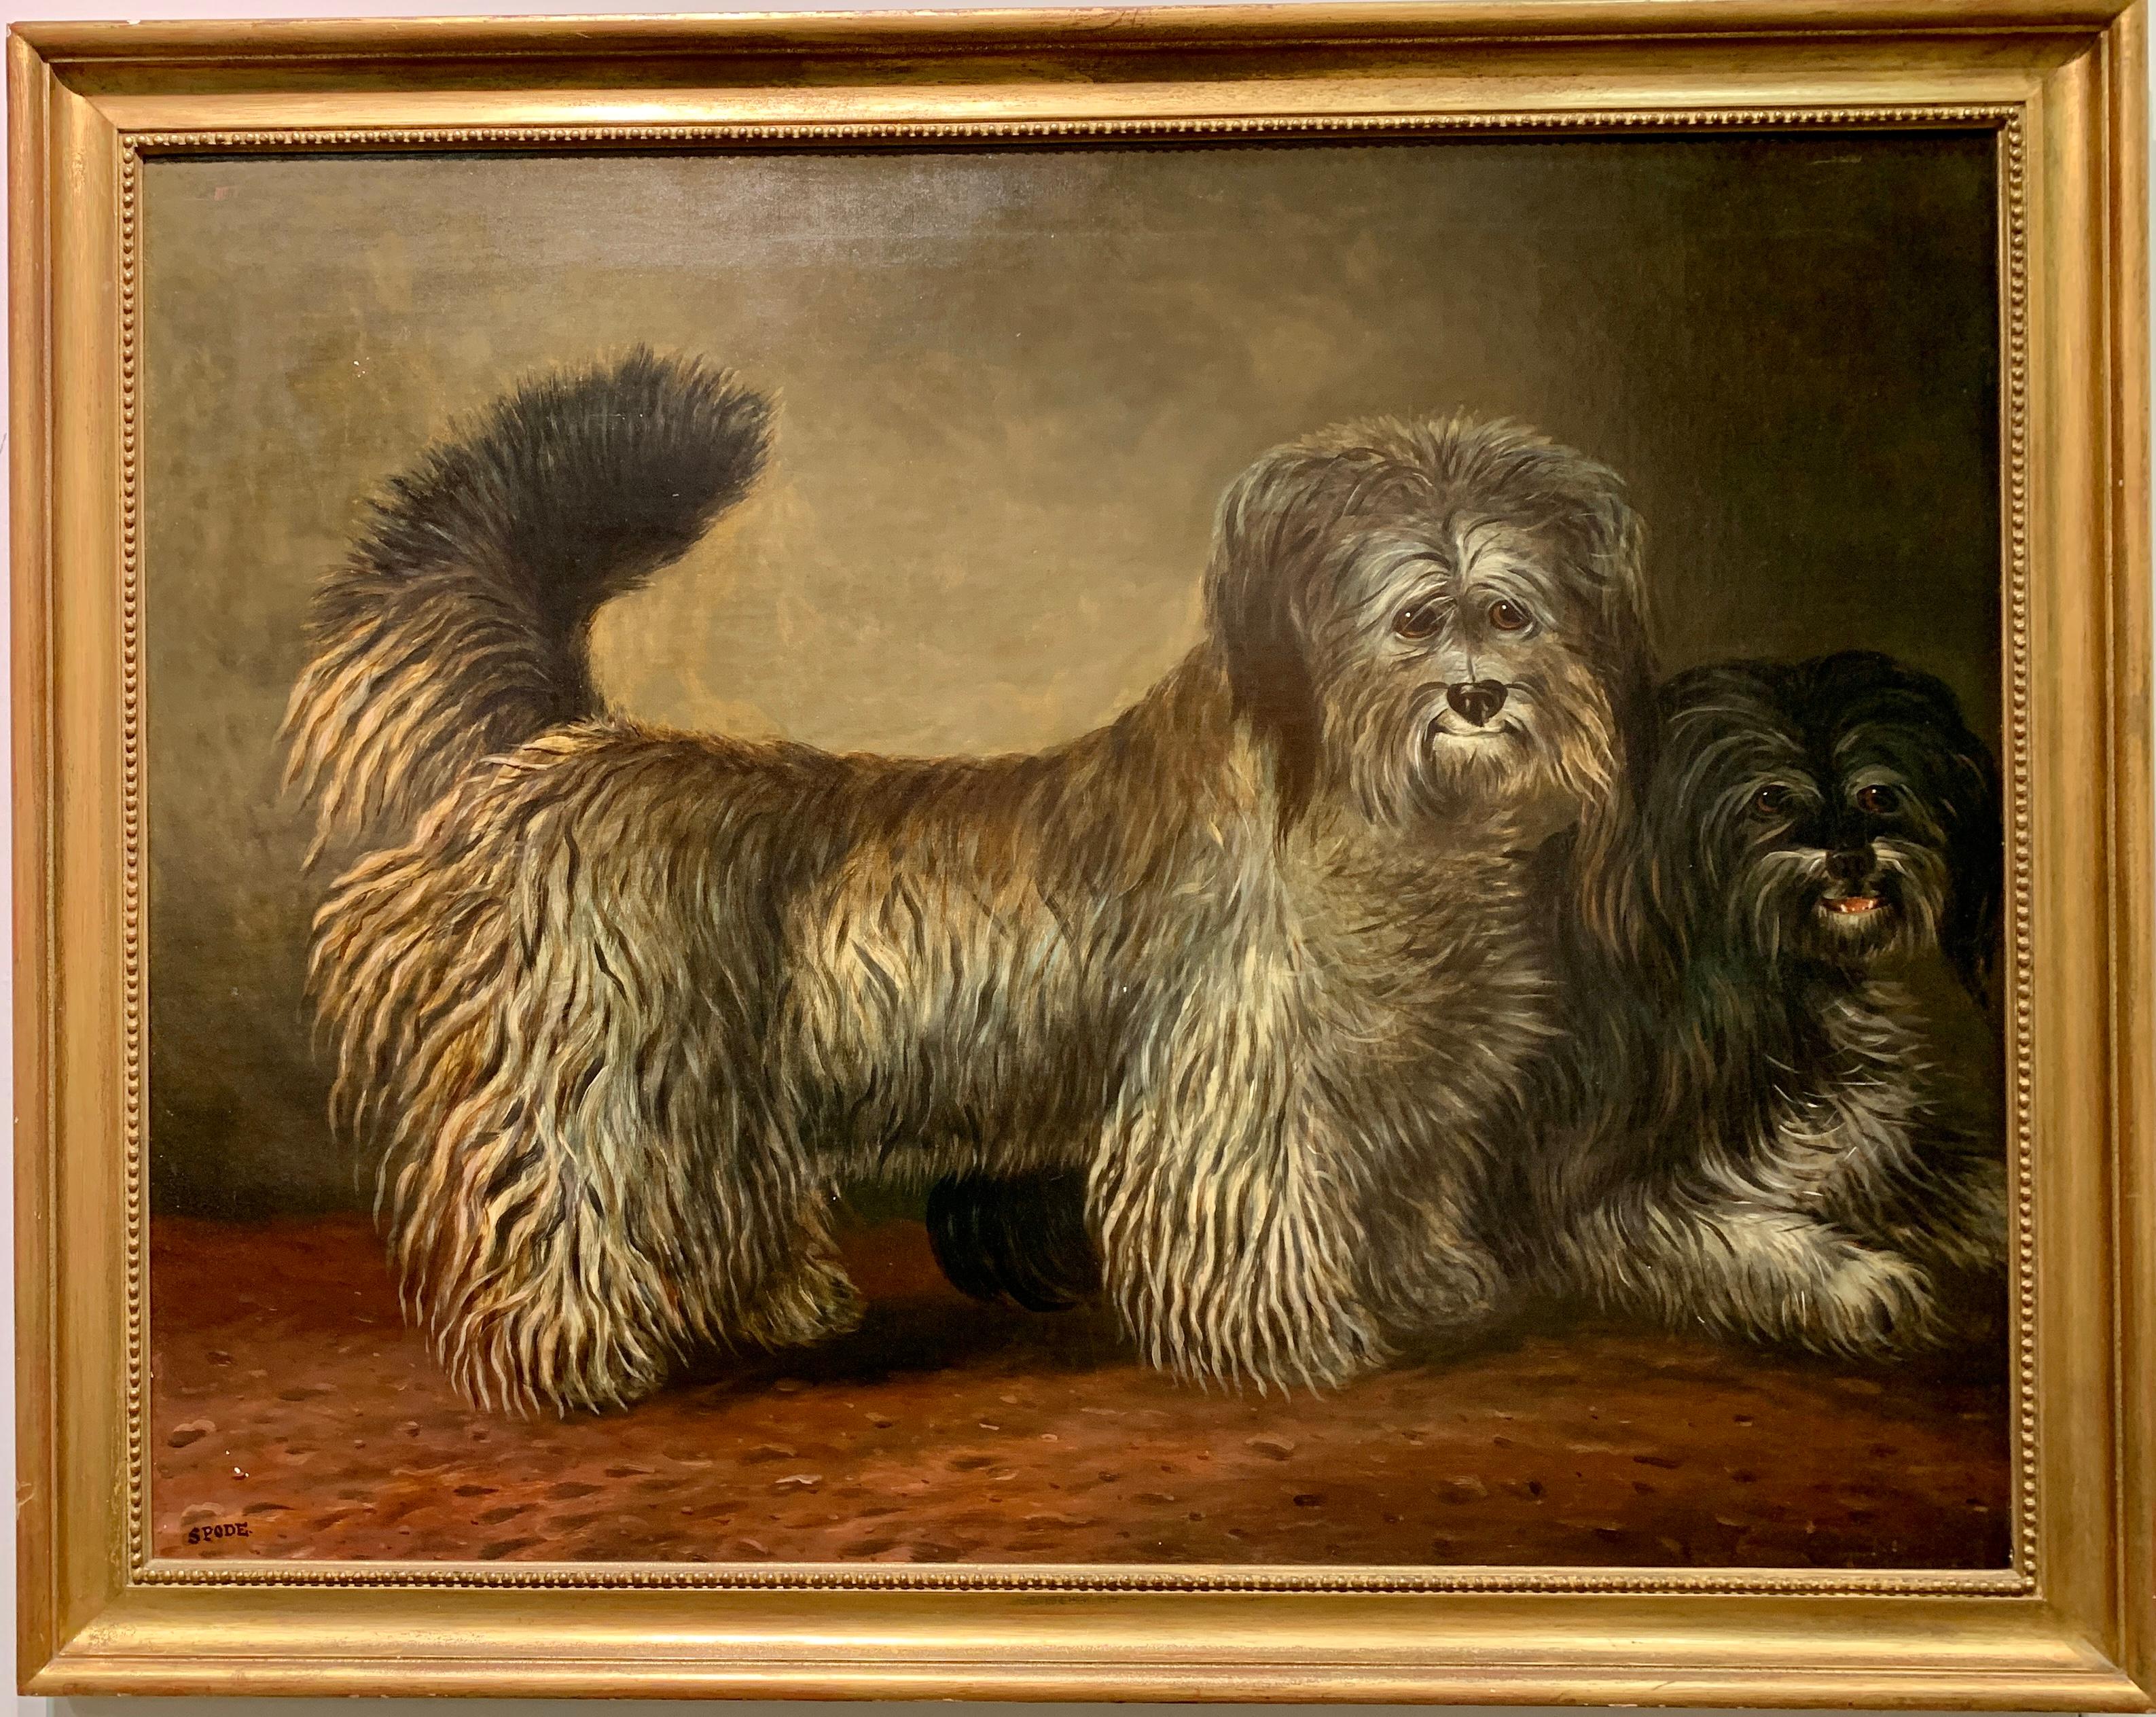 Portrait ancien irlandais ou anglais du 19ème siècle représentant deux chiens et des canards d'eau - Painting de Sam Spode